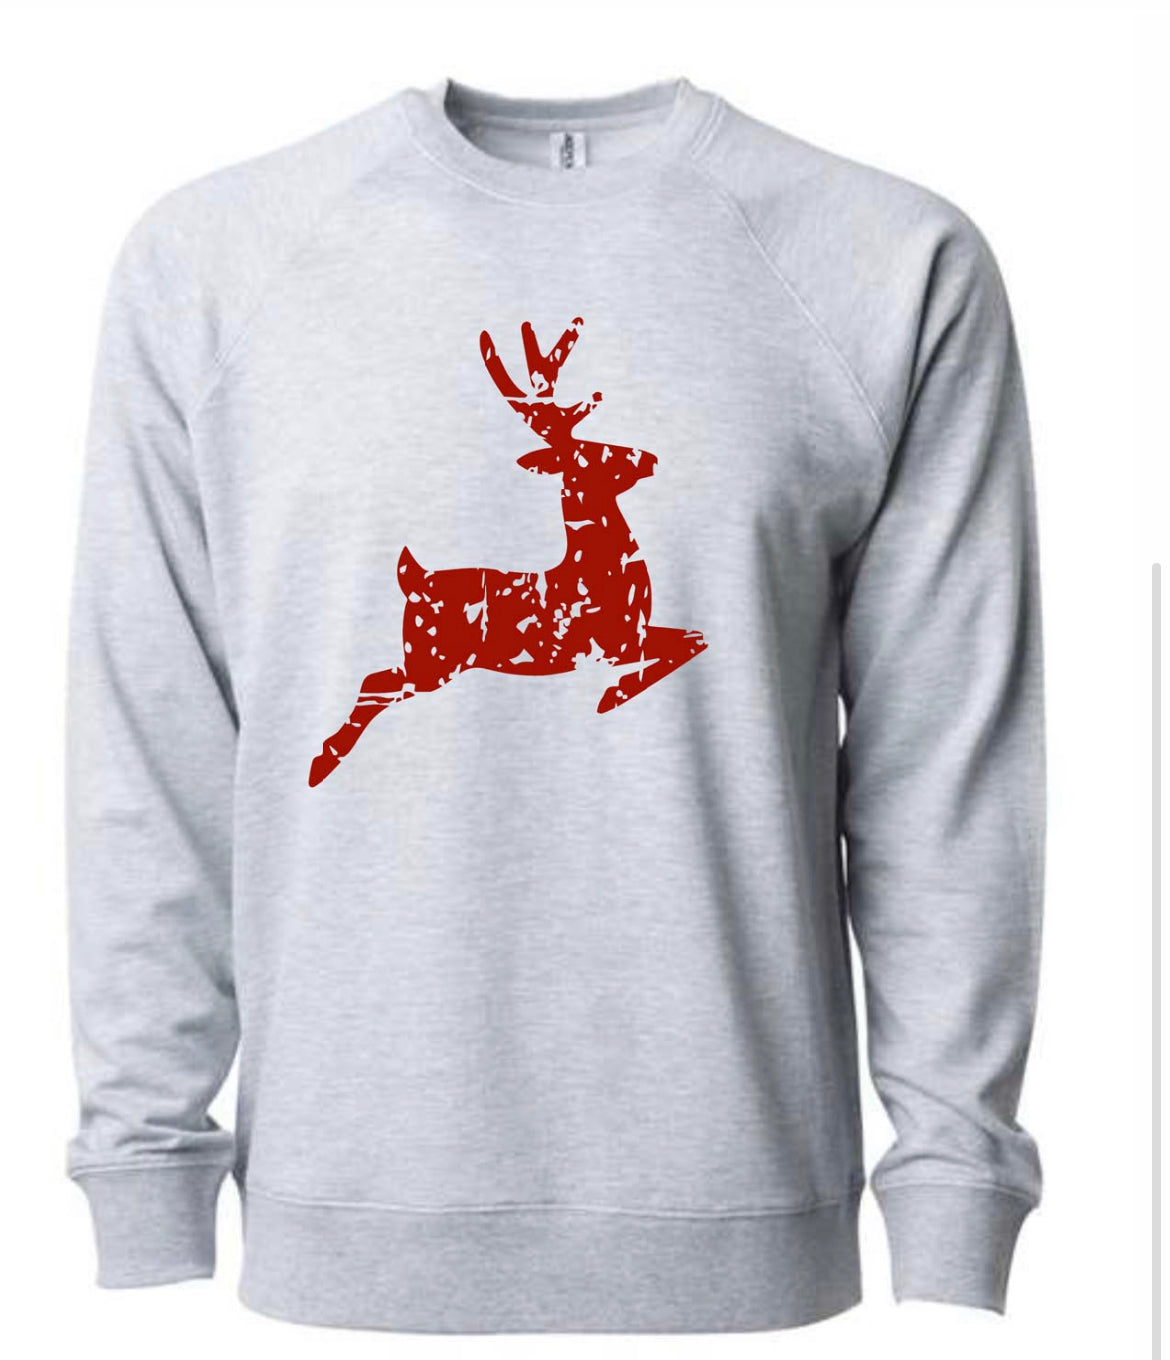 Reindeer distressed sweatshirt